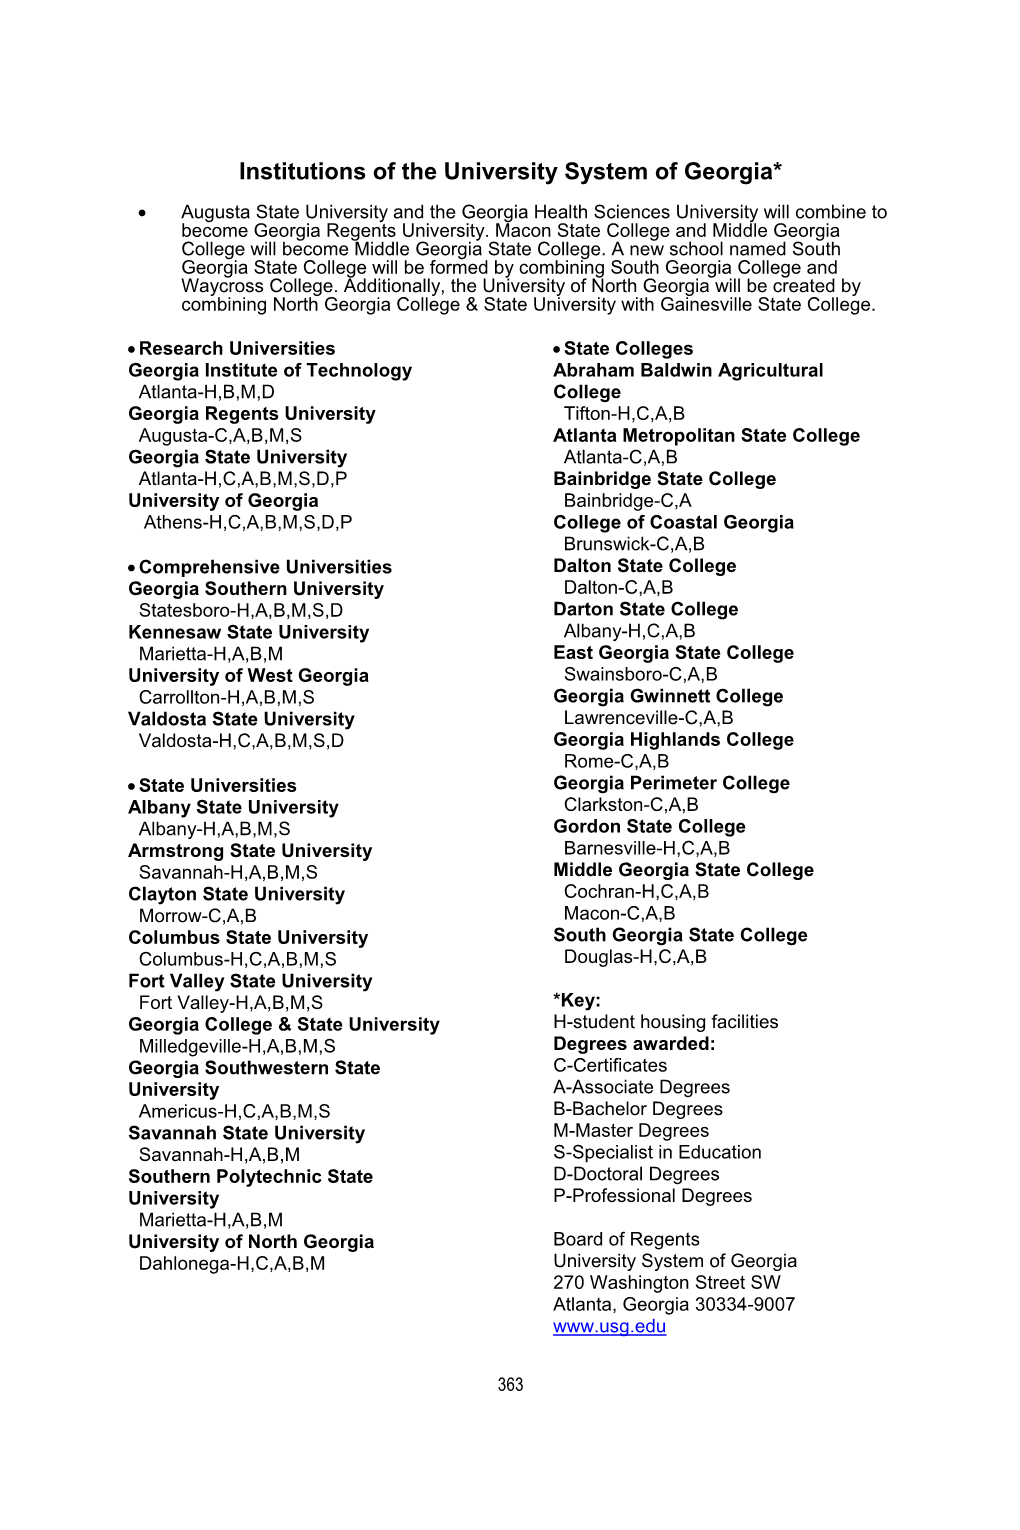 Darton State College 2015-2016 Catalog